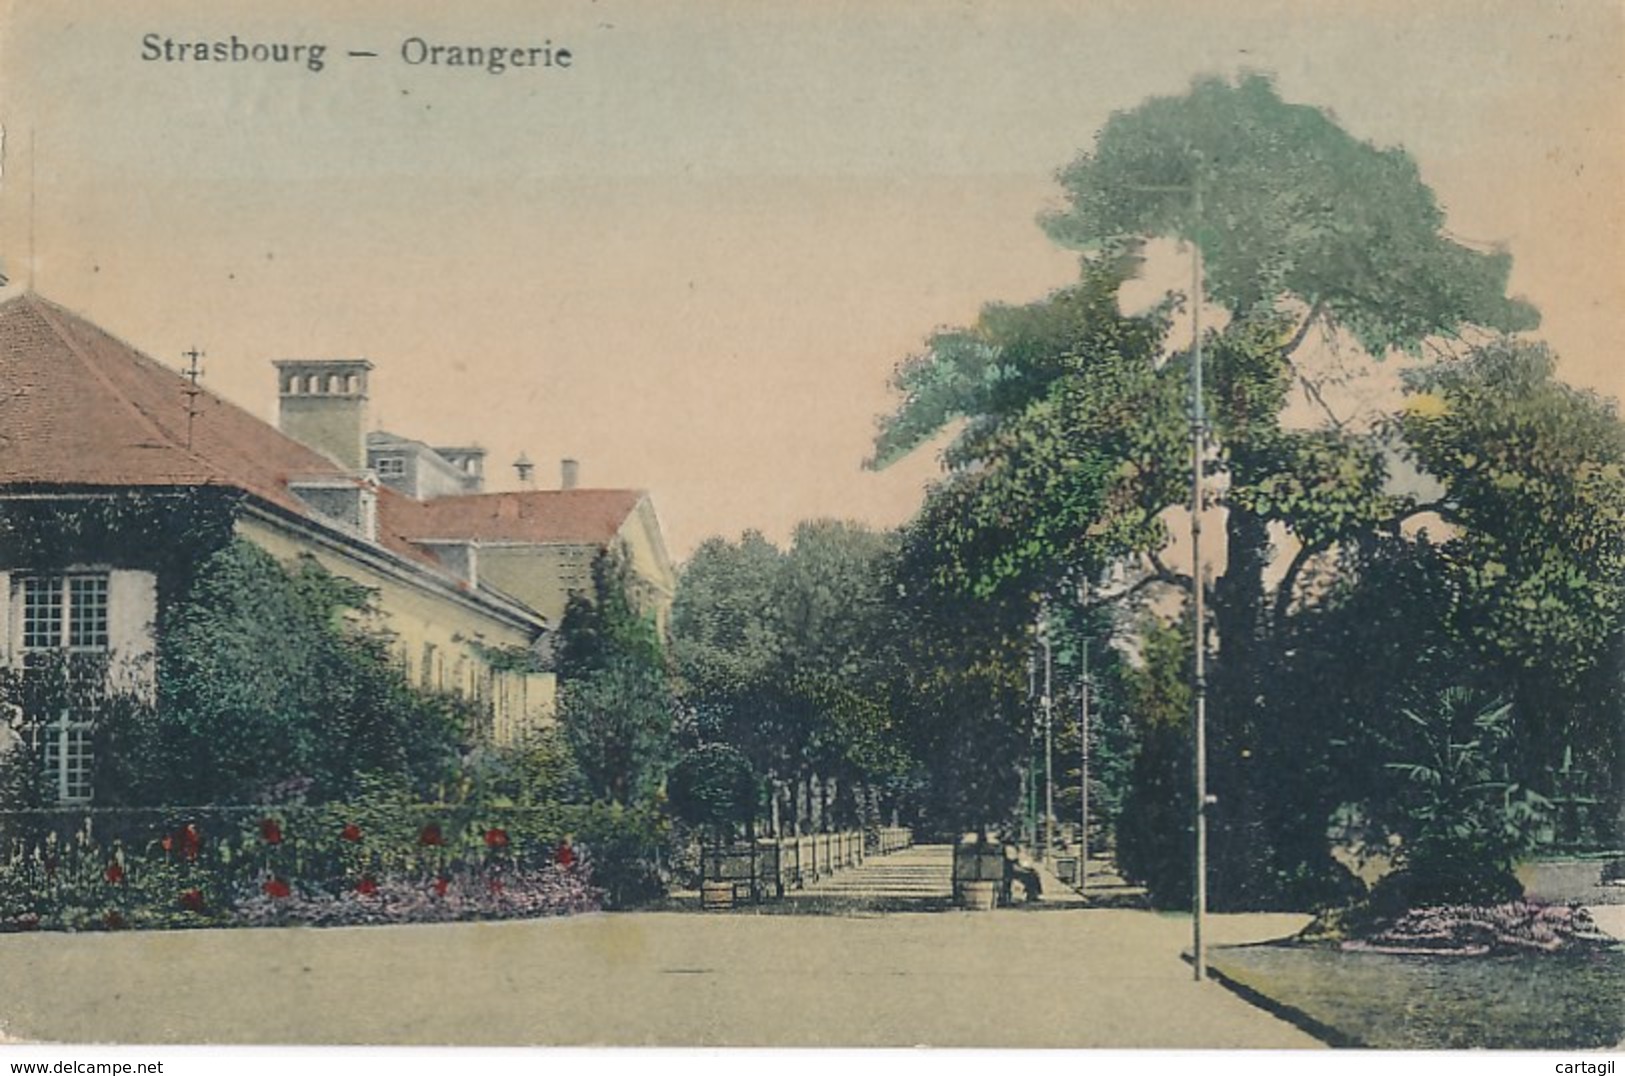 Lot -L400 -67- Strasbourg Orangerie -Belle sélection  de 38  cartes postales ( scans et description)